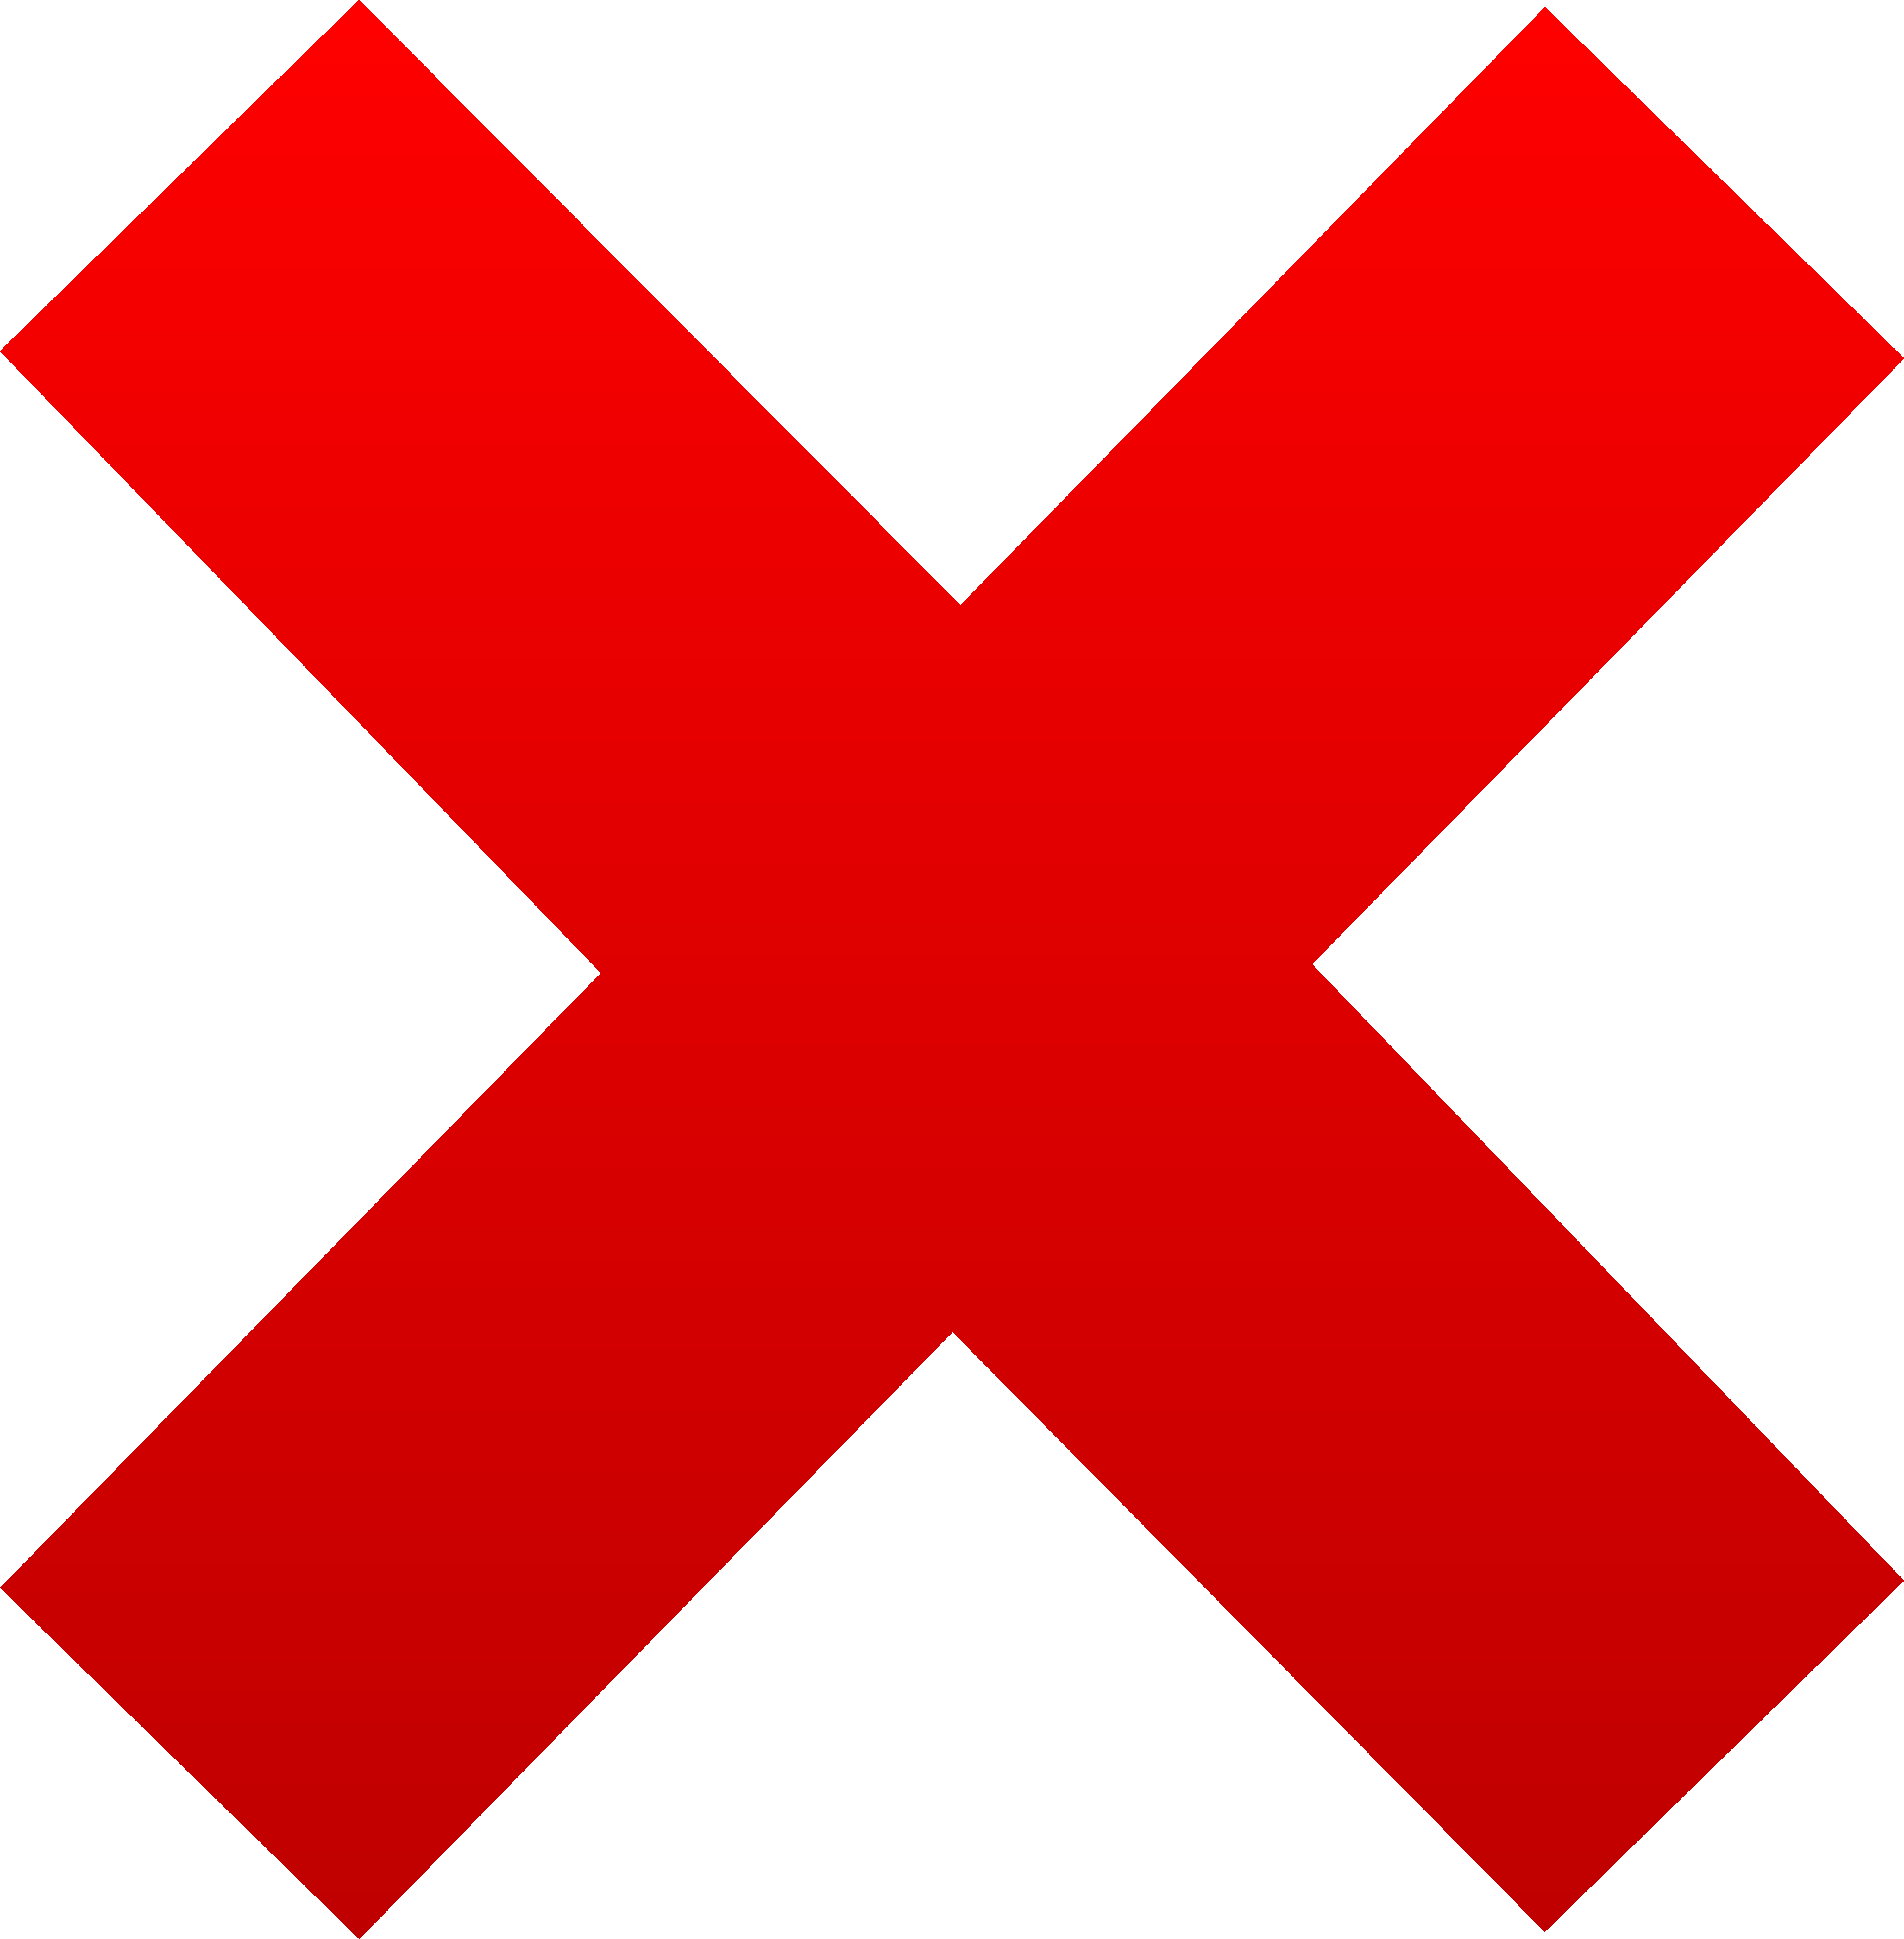 Red X Symbol